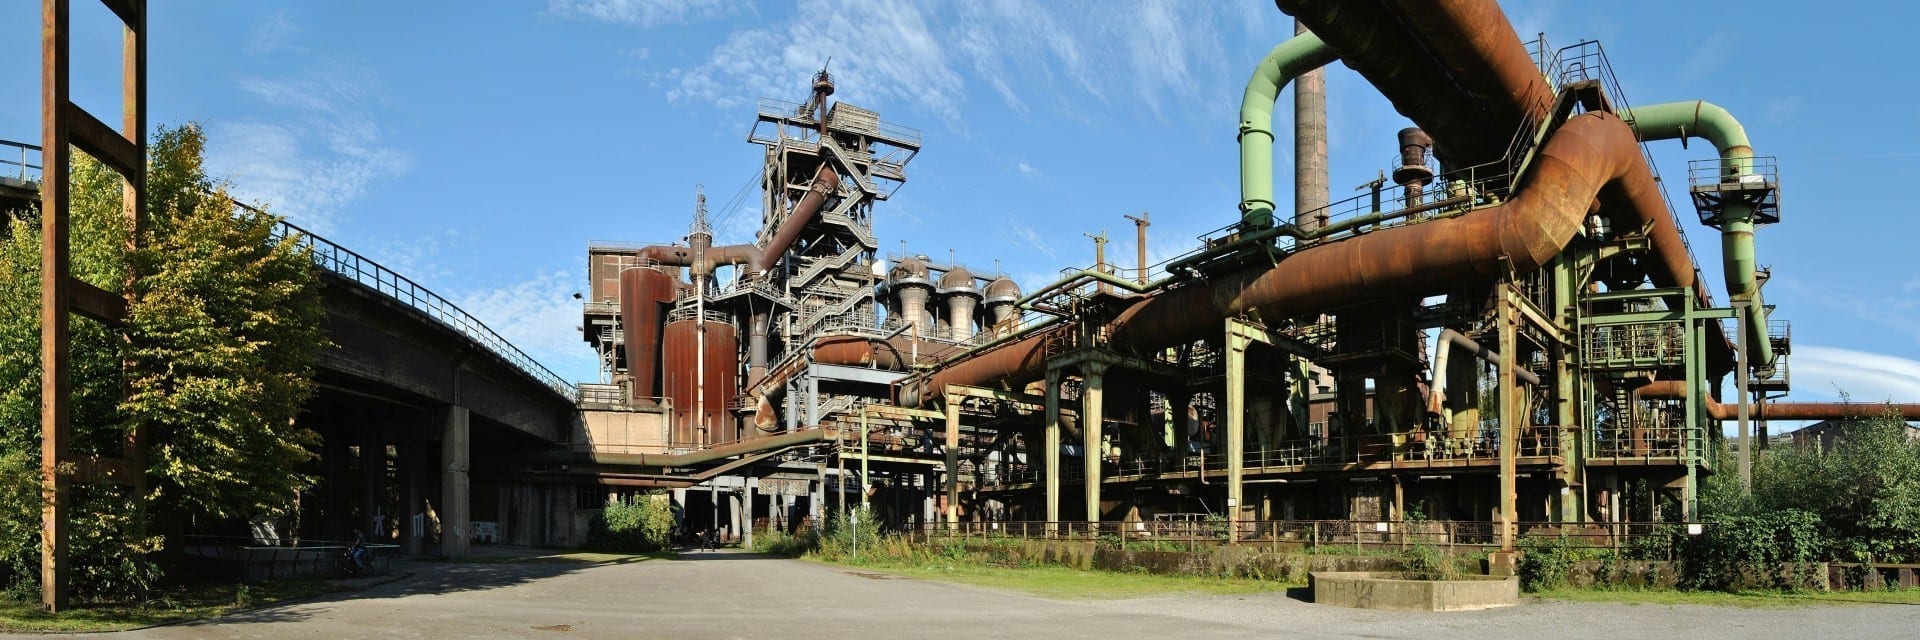 Horno en desuso en la antigua fábrica de acero Meiderich, ahora parque paisajístico Duisburg Alemania